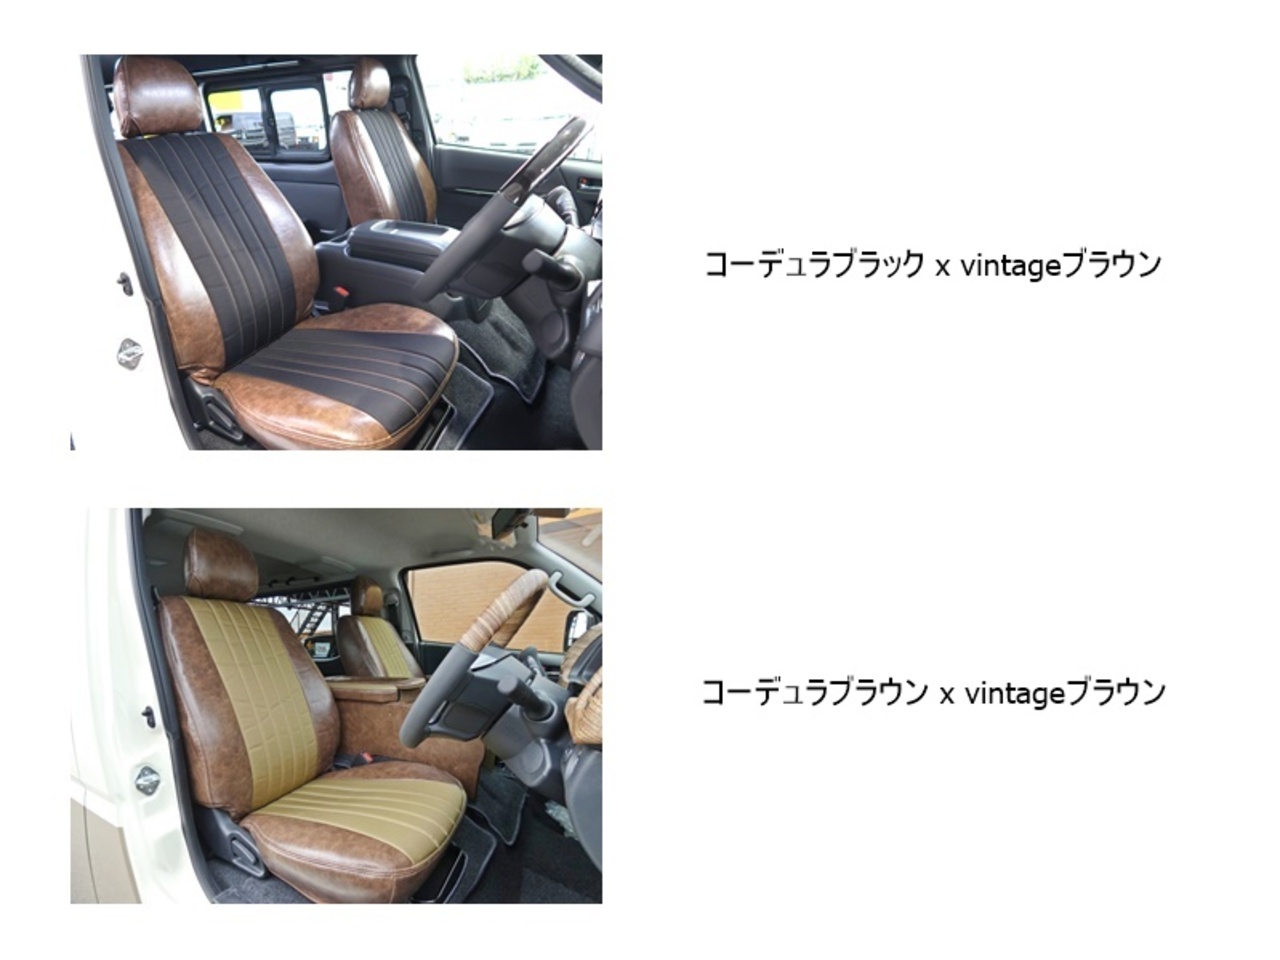 ハイエースワゴン 3列シート×バンライフスタイル【FD-BOX W04】 ヴィンテージ生地標準でシートカバーから選べます